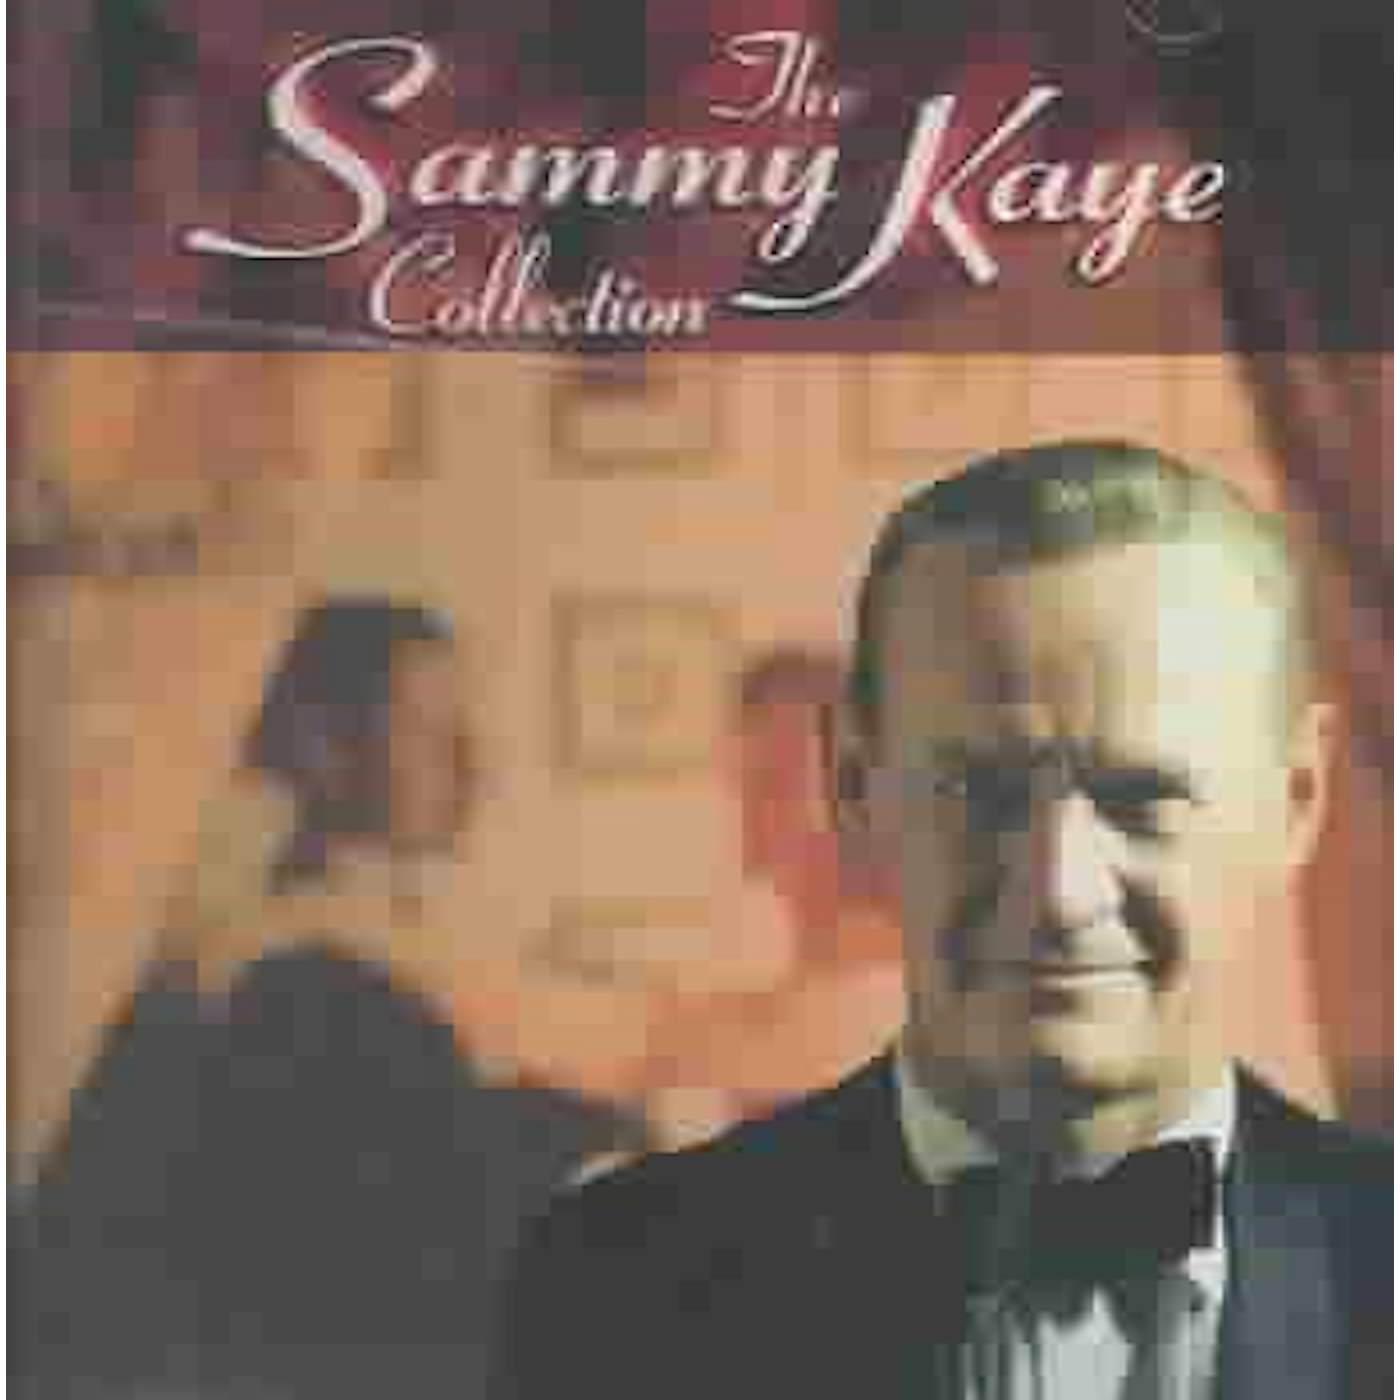 Sammy Kaye Collection CD